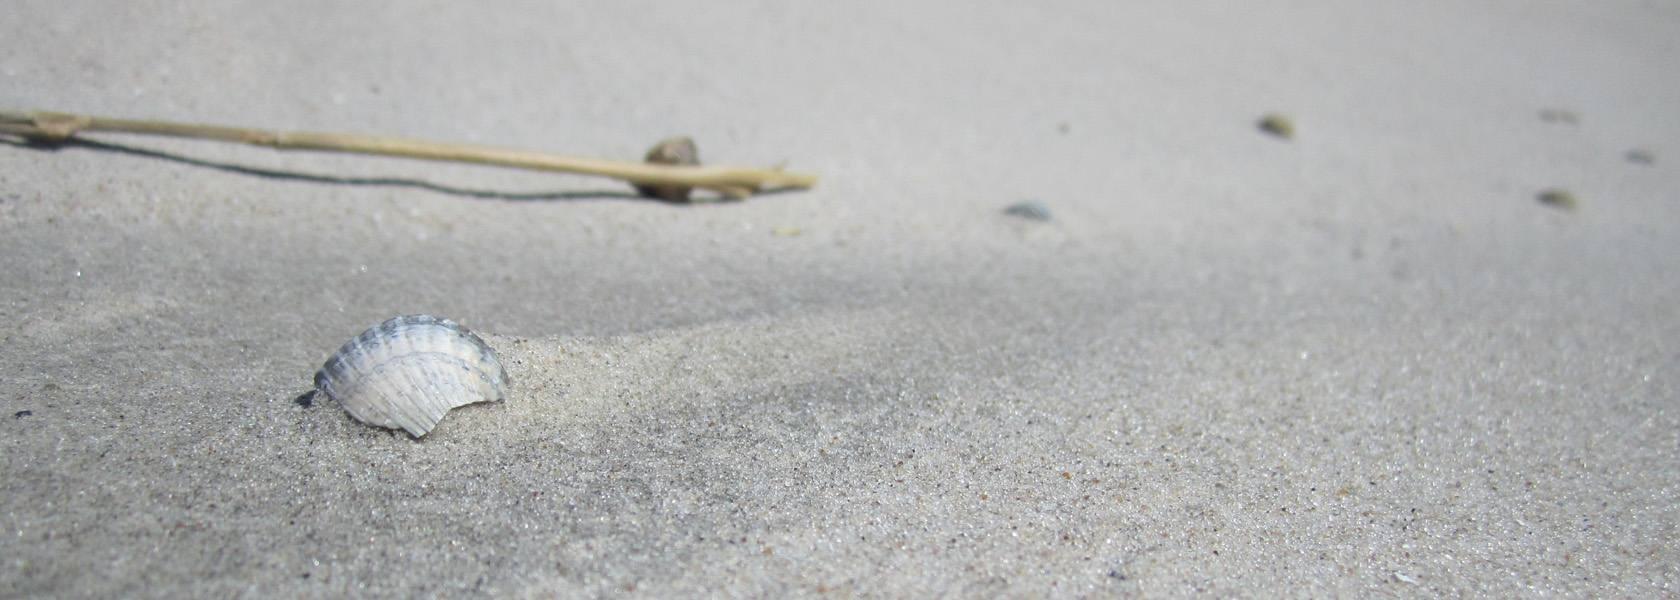 Muschel im Sand, © Die Nordsee GmbH, Jantje Olchers